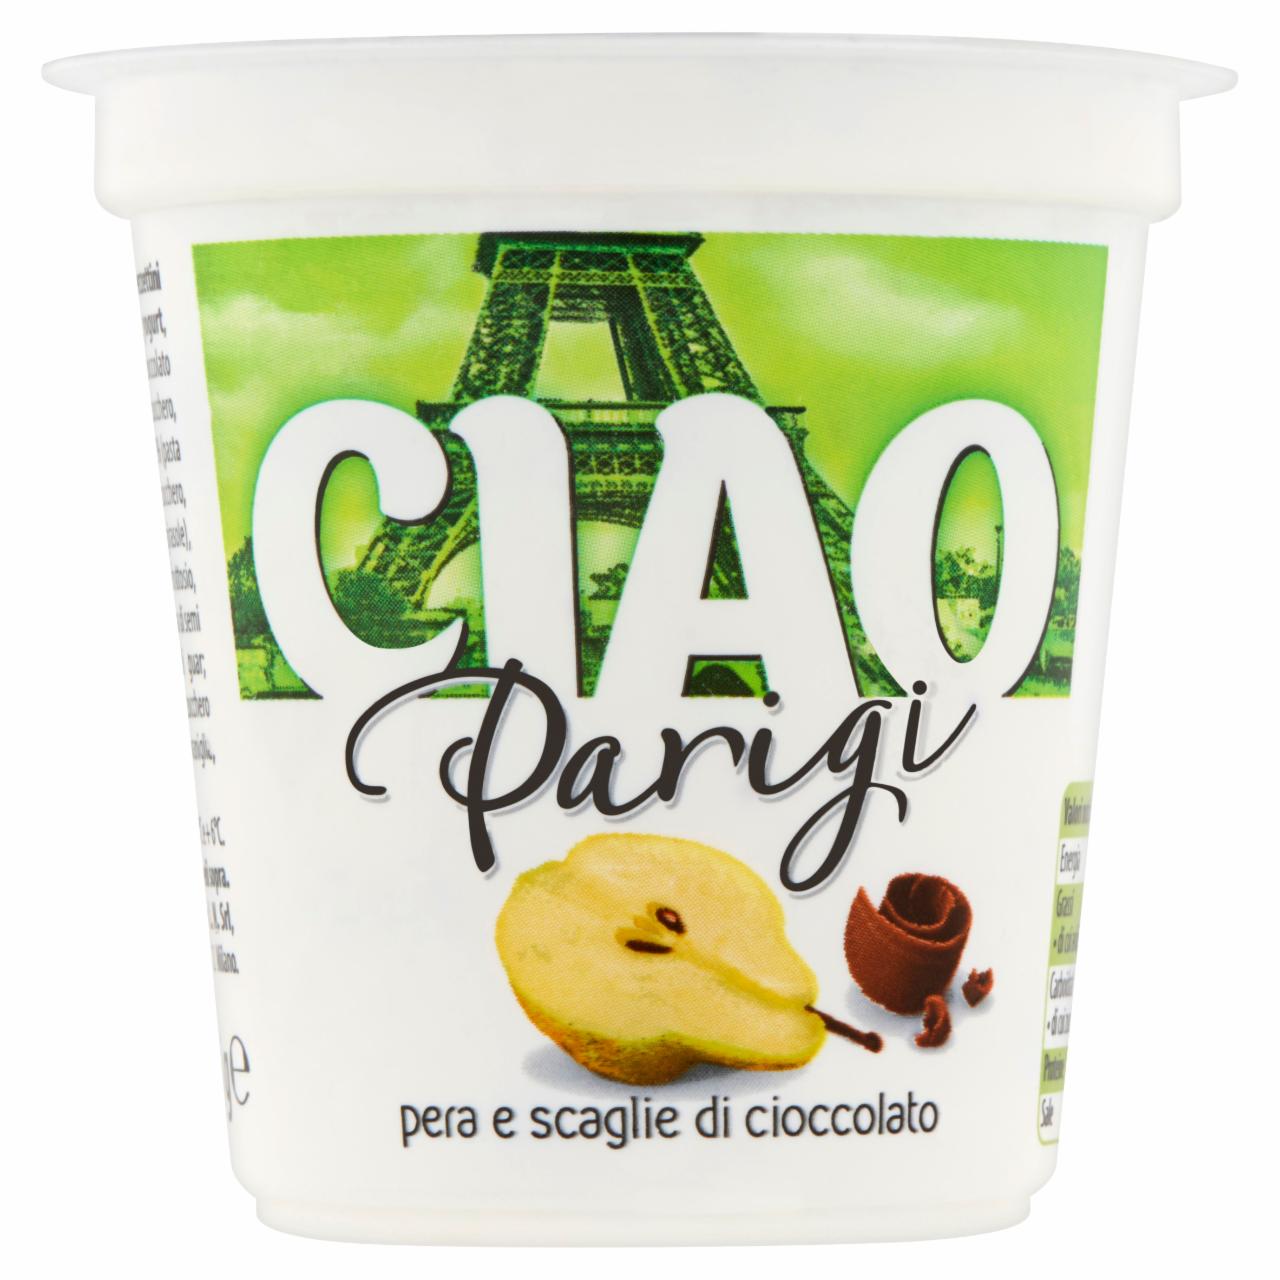 Képek - Ciao Franciaország körtés-csokoládés desszertjoghurt 125 g